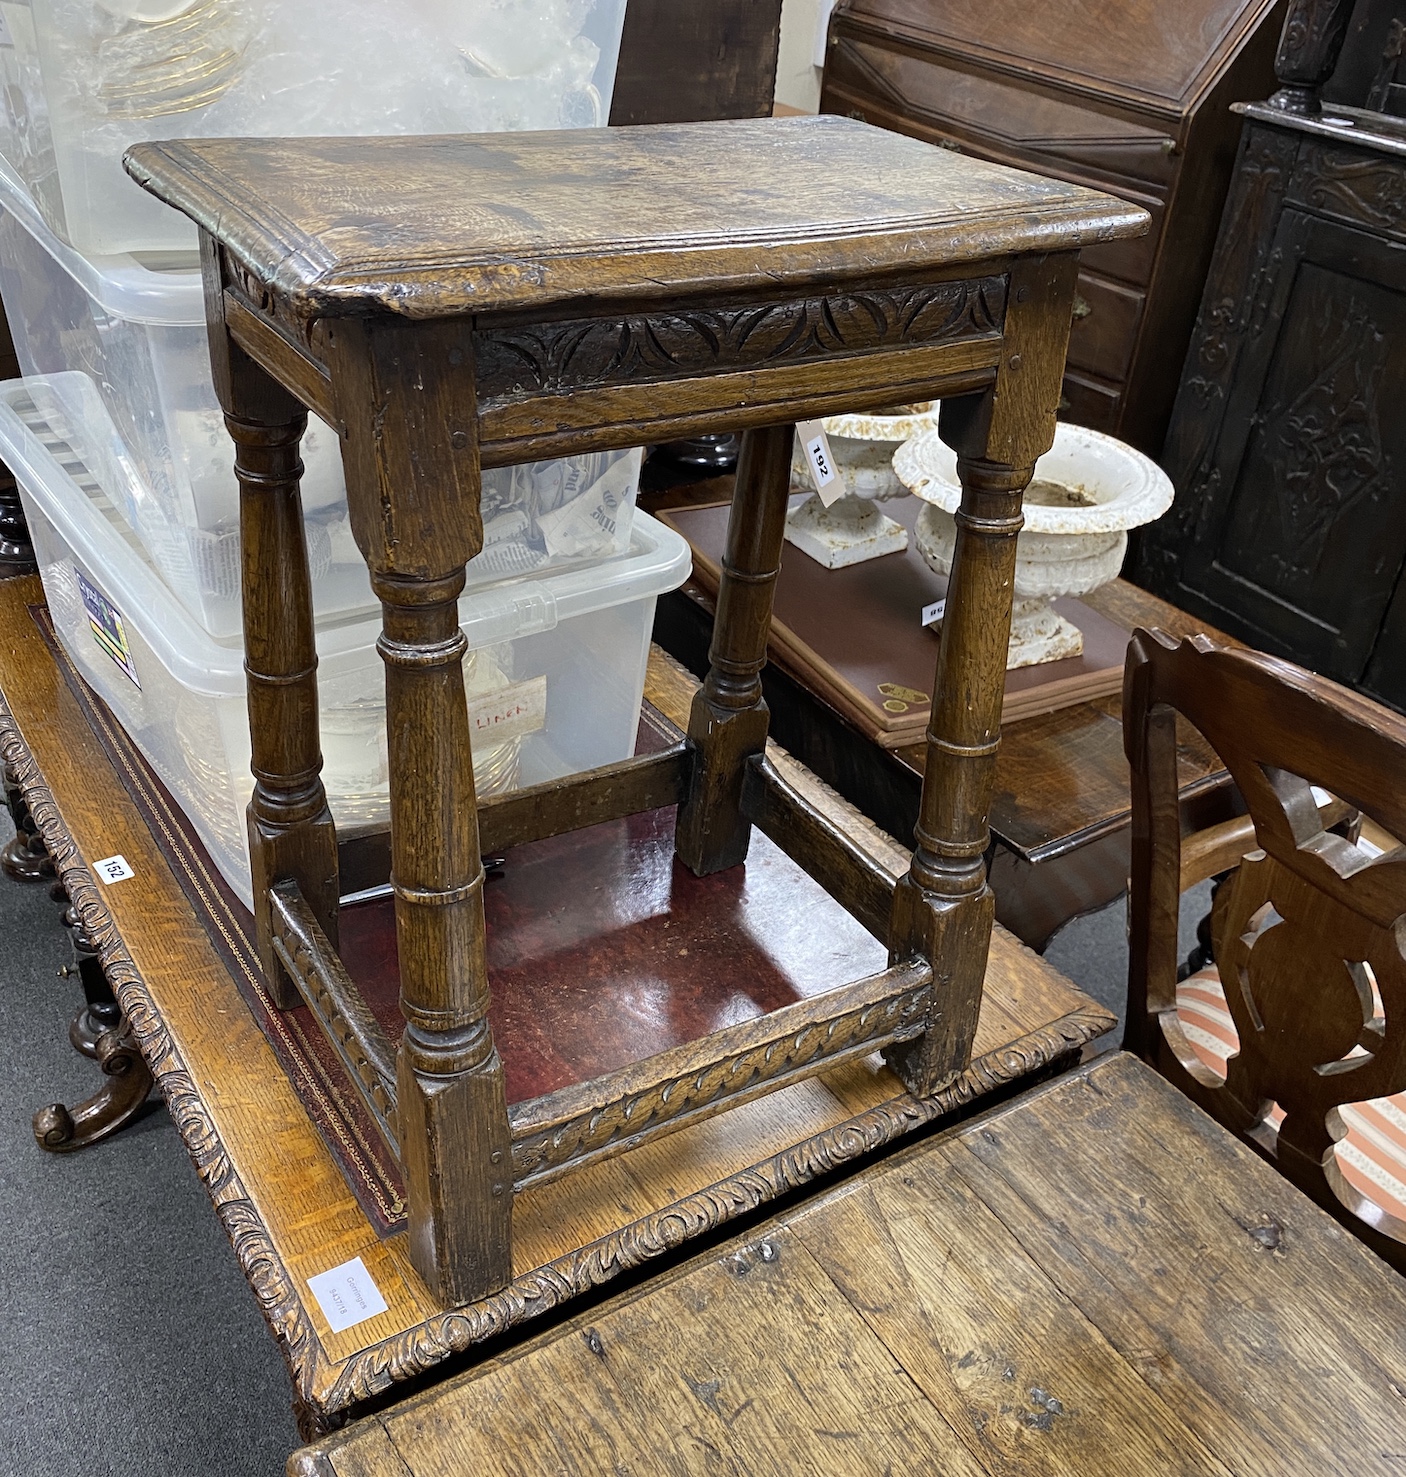 An 18th century oak joint stool width 44cms, depth 28cms, height 57cms.                                                                                                                                                     